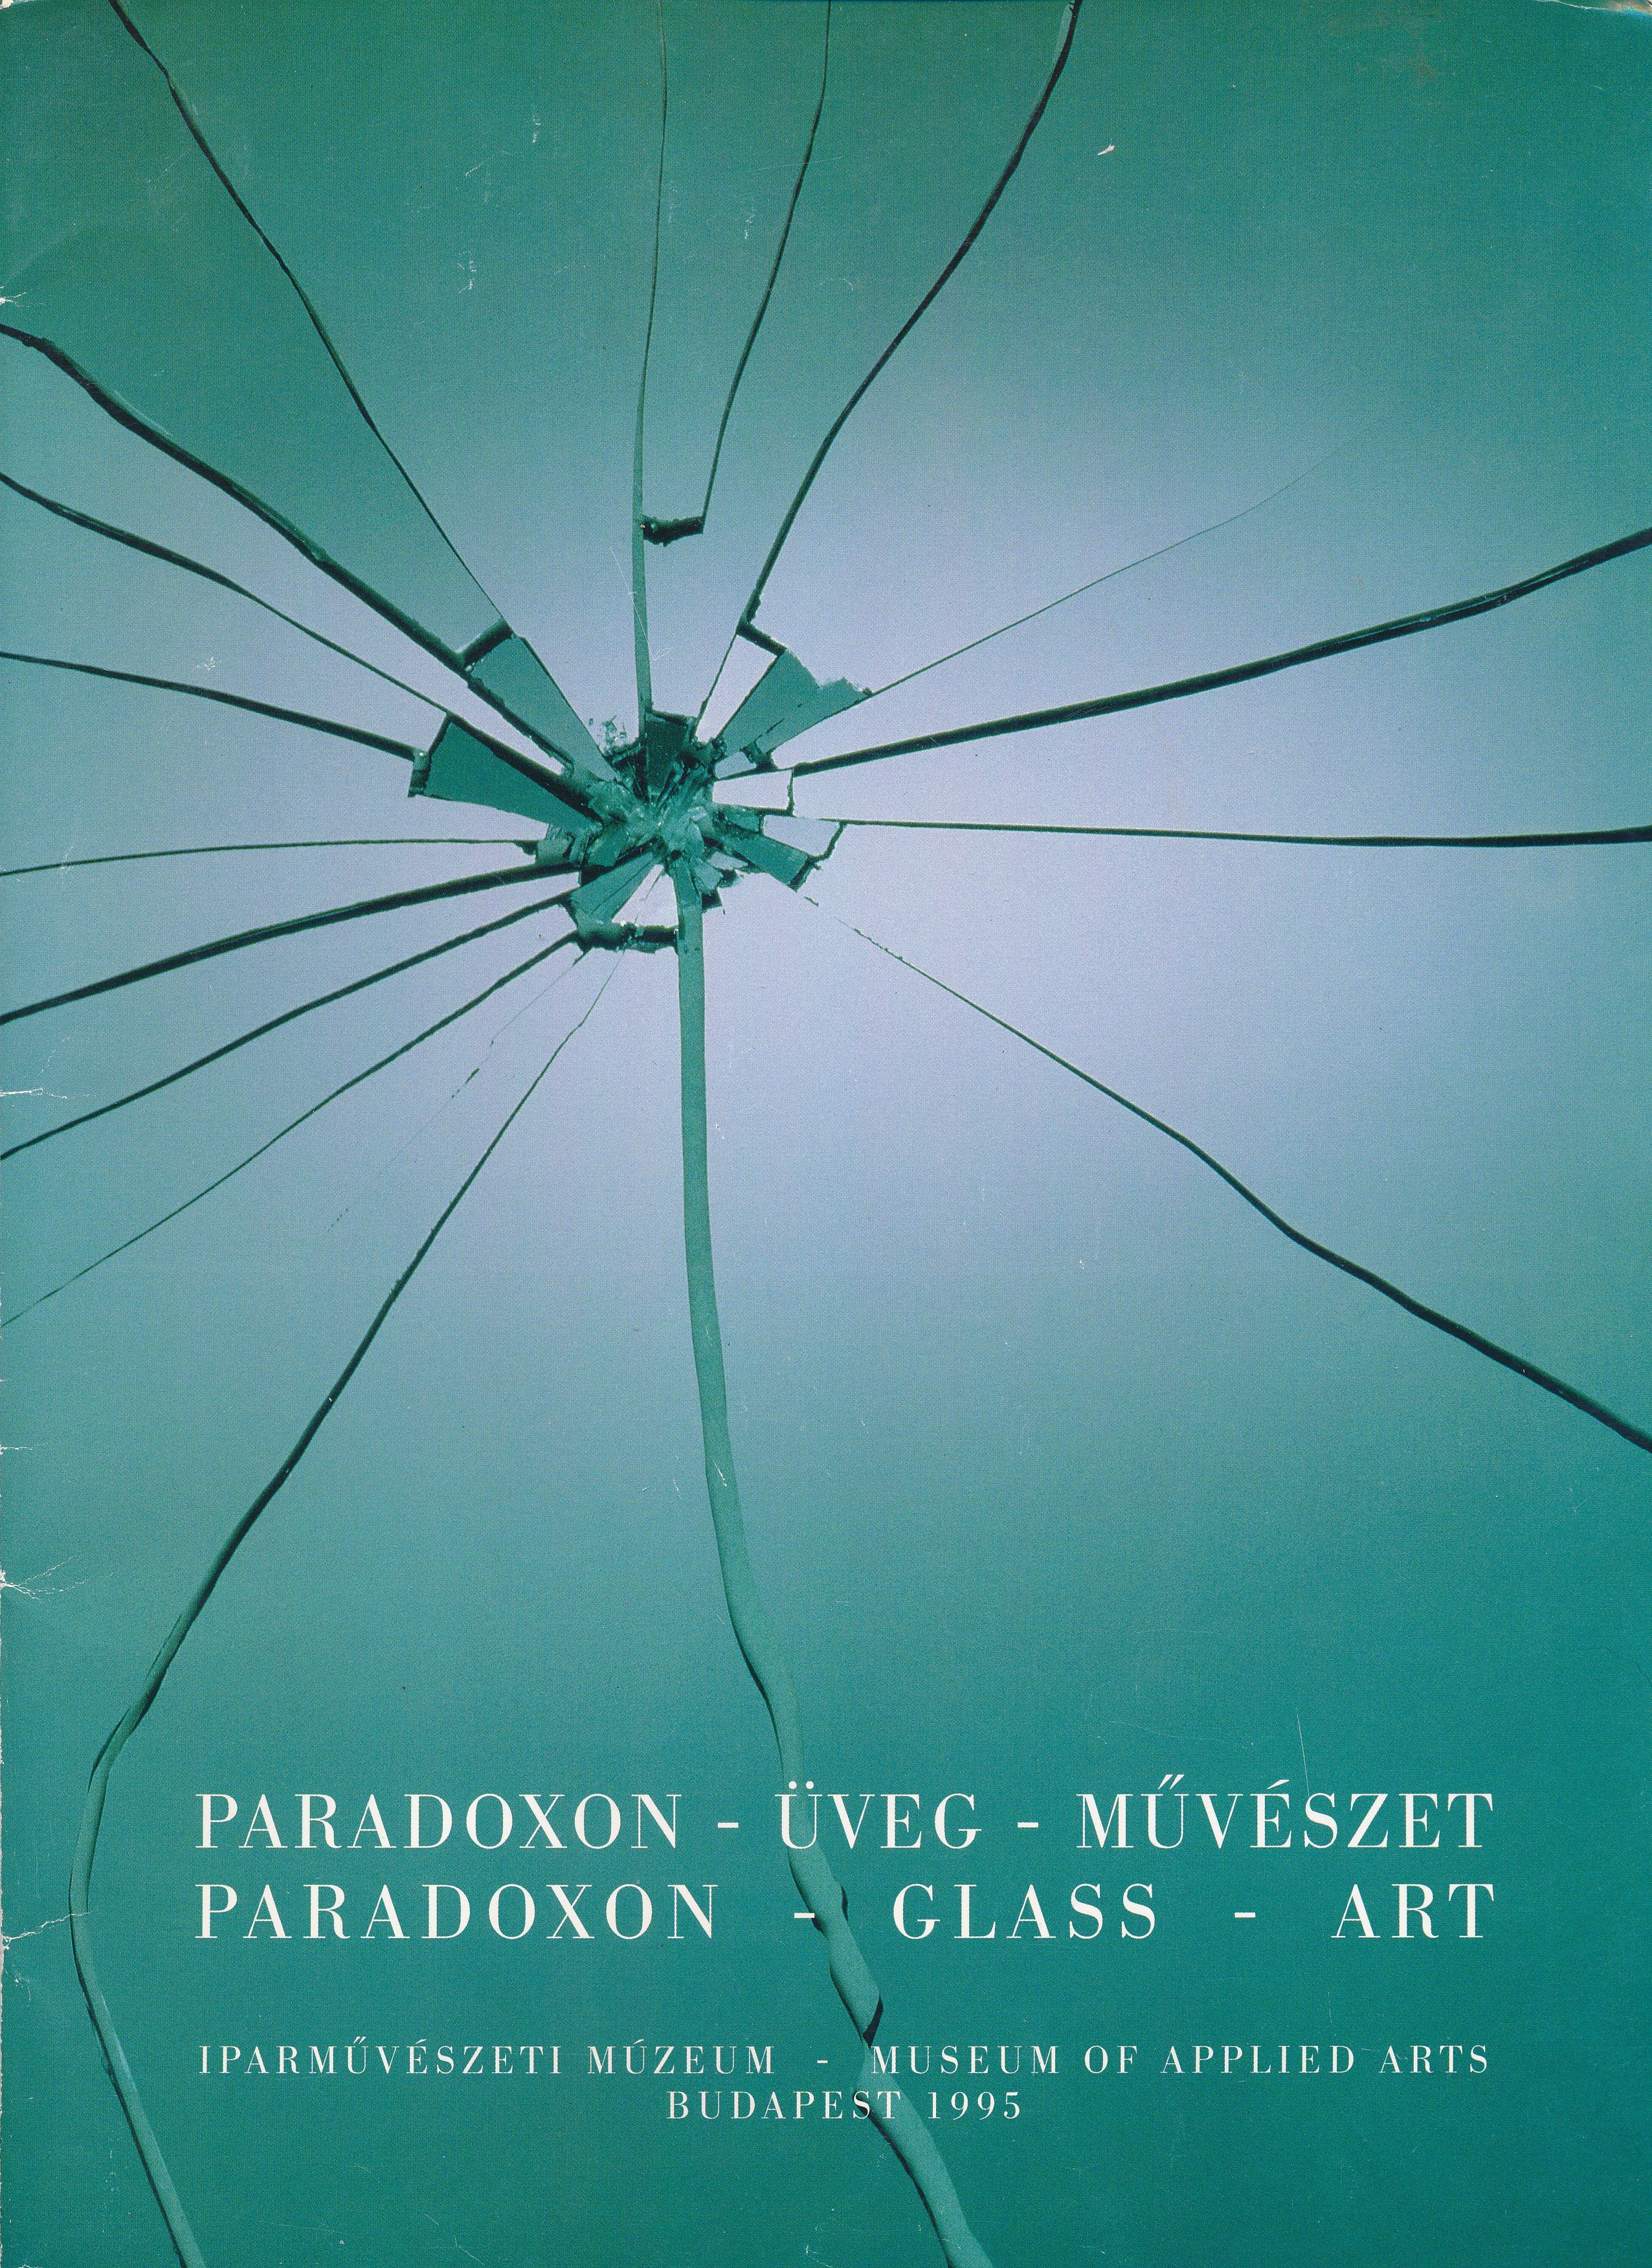 Paradoxon Üveg Művészet Iparművészeti Múzeum 1995 (Design DigiTár – Iparművészeti archívum CC BY-NC-SA)